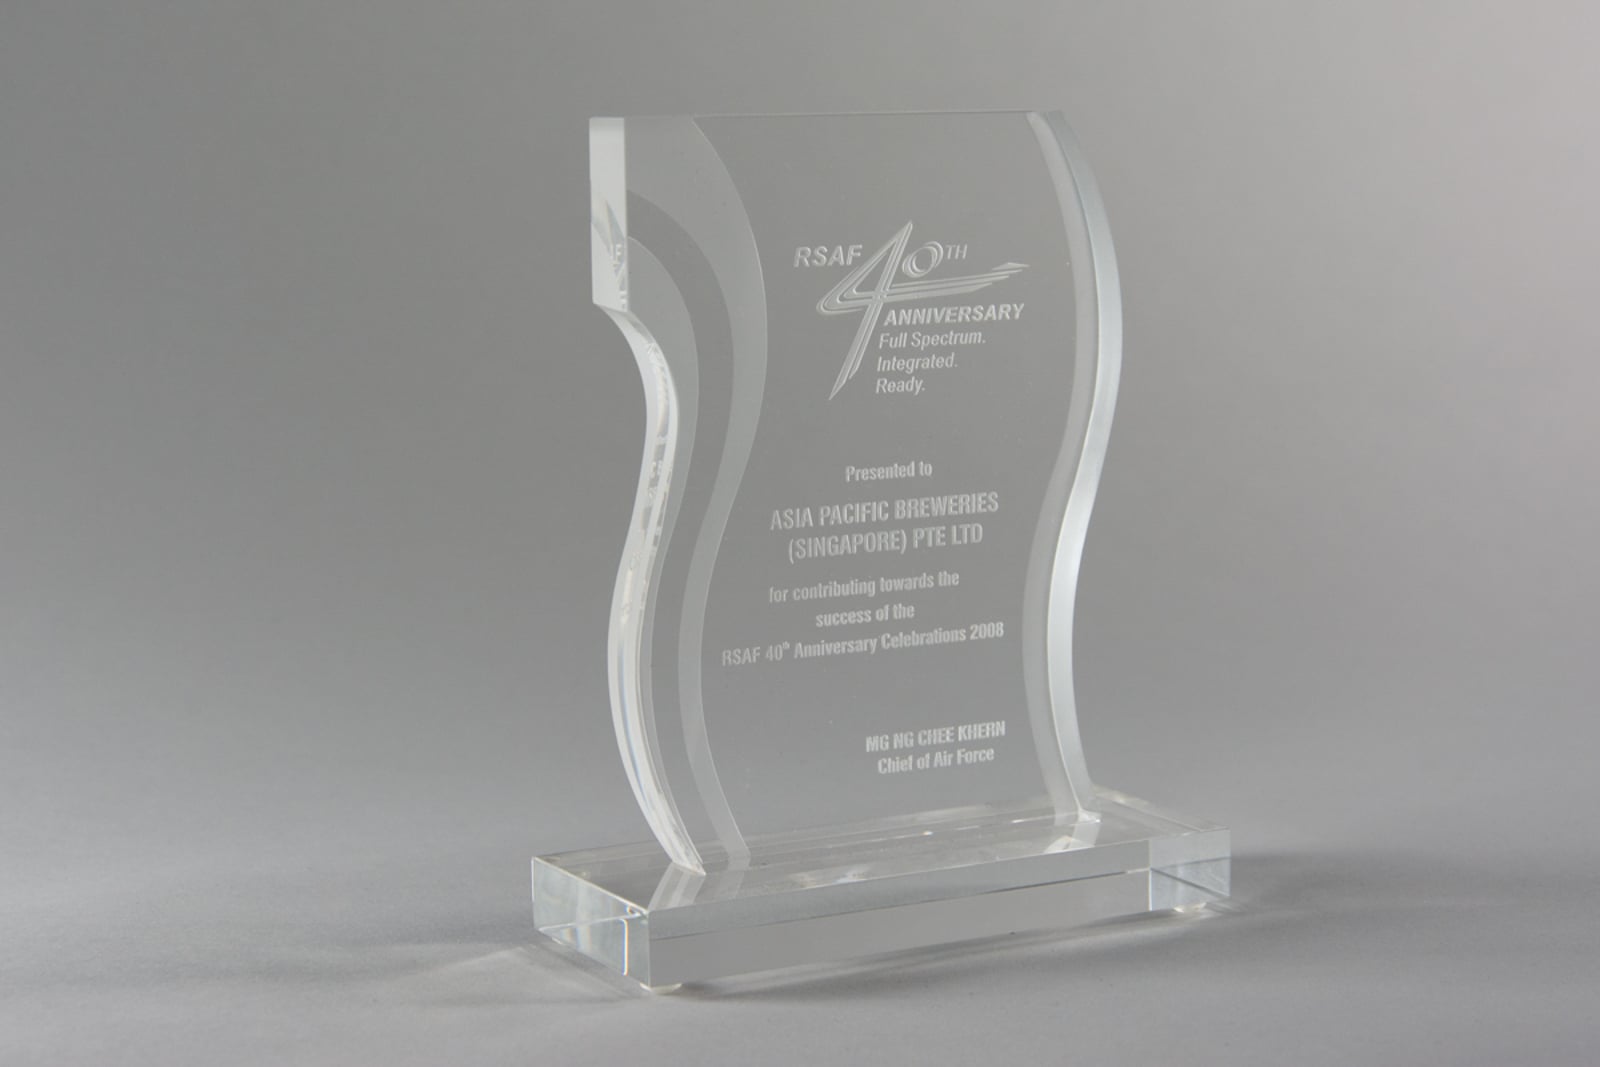 RSAF 40th Anniversary Trophy 2008